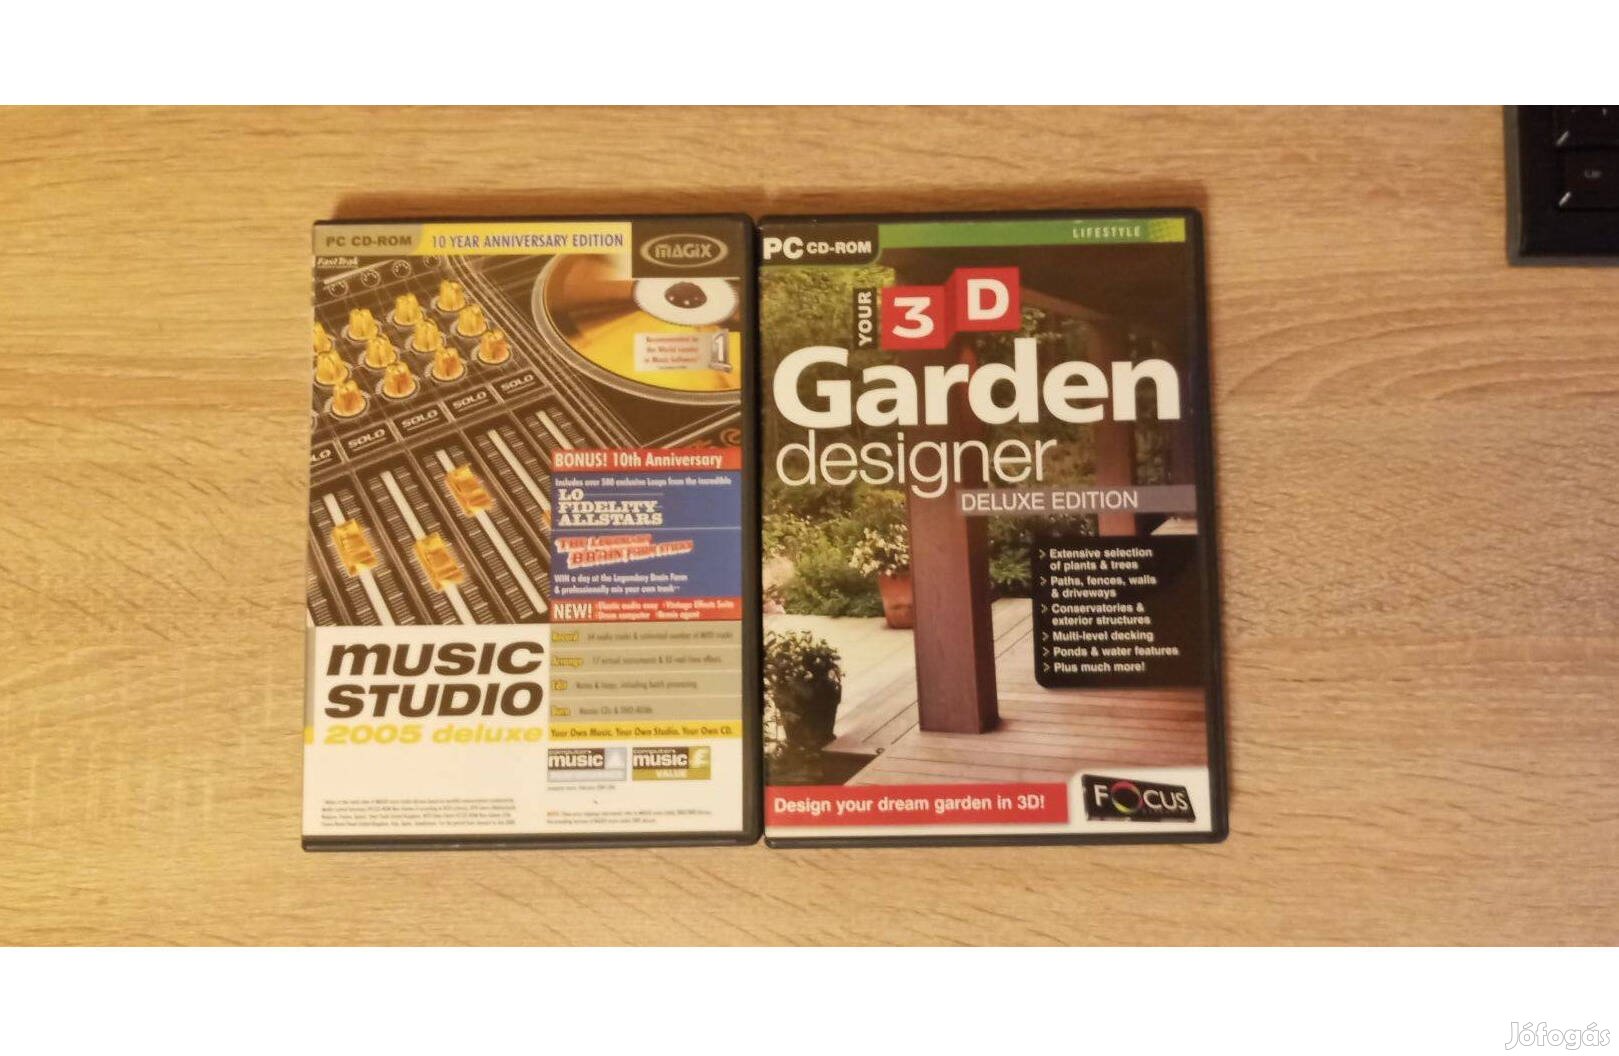 Music Studio deluxe zenevágó és 3d Garden designer szoftver